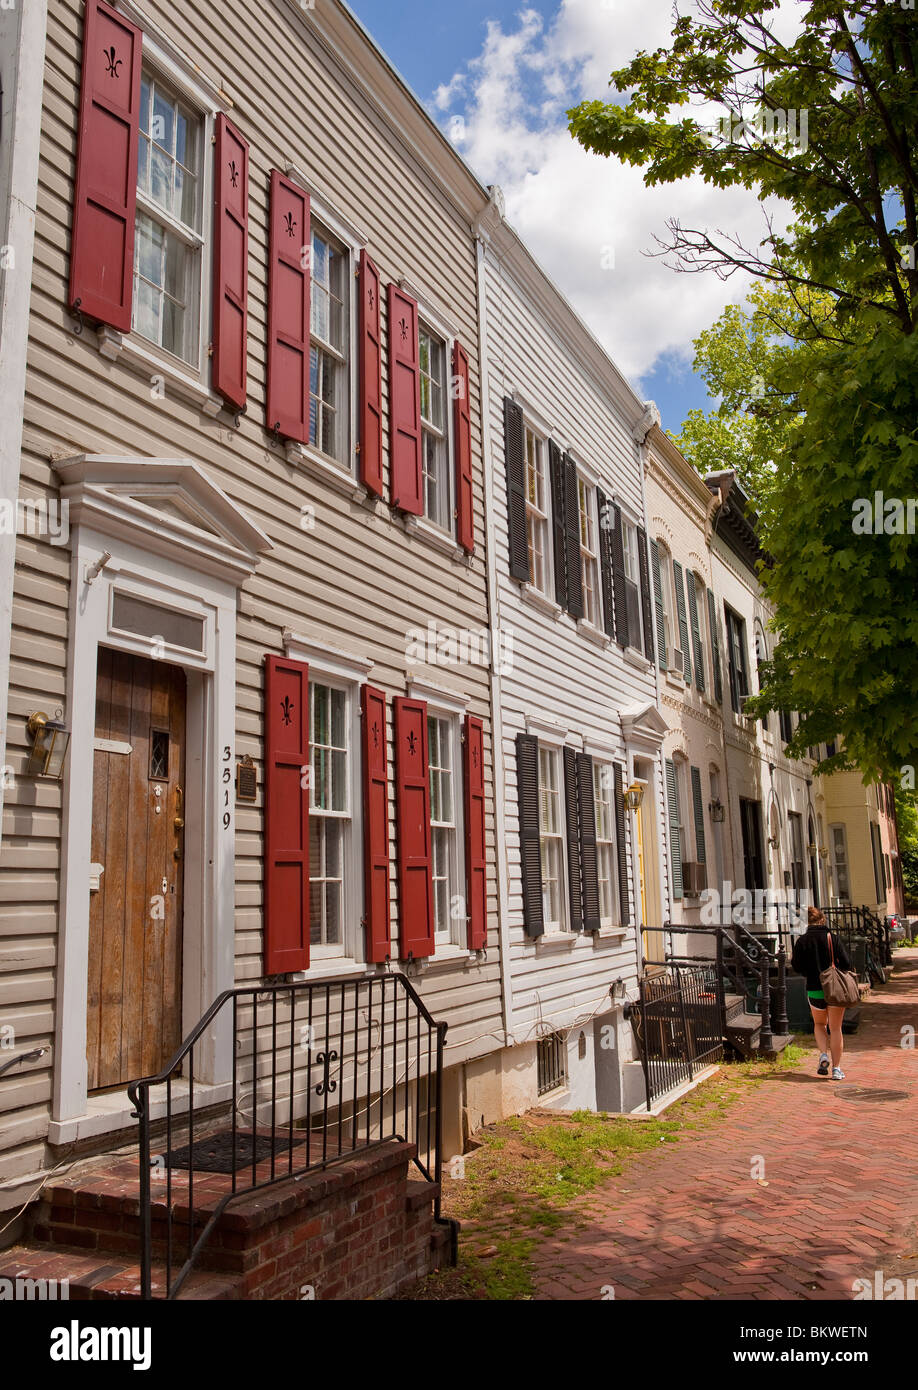 WASHINGTON, DC, USA - Maisons sur O street dans le quartier historique de Georgetown. Banque D'Images